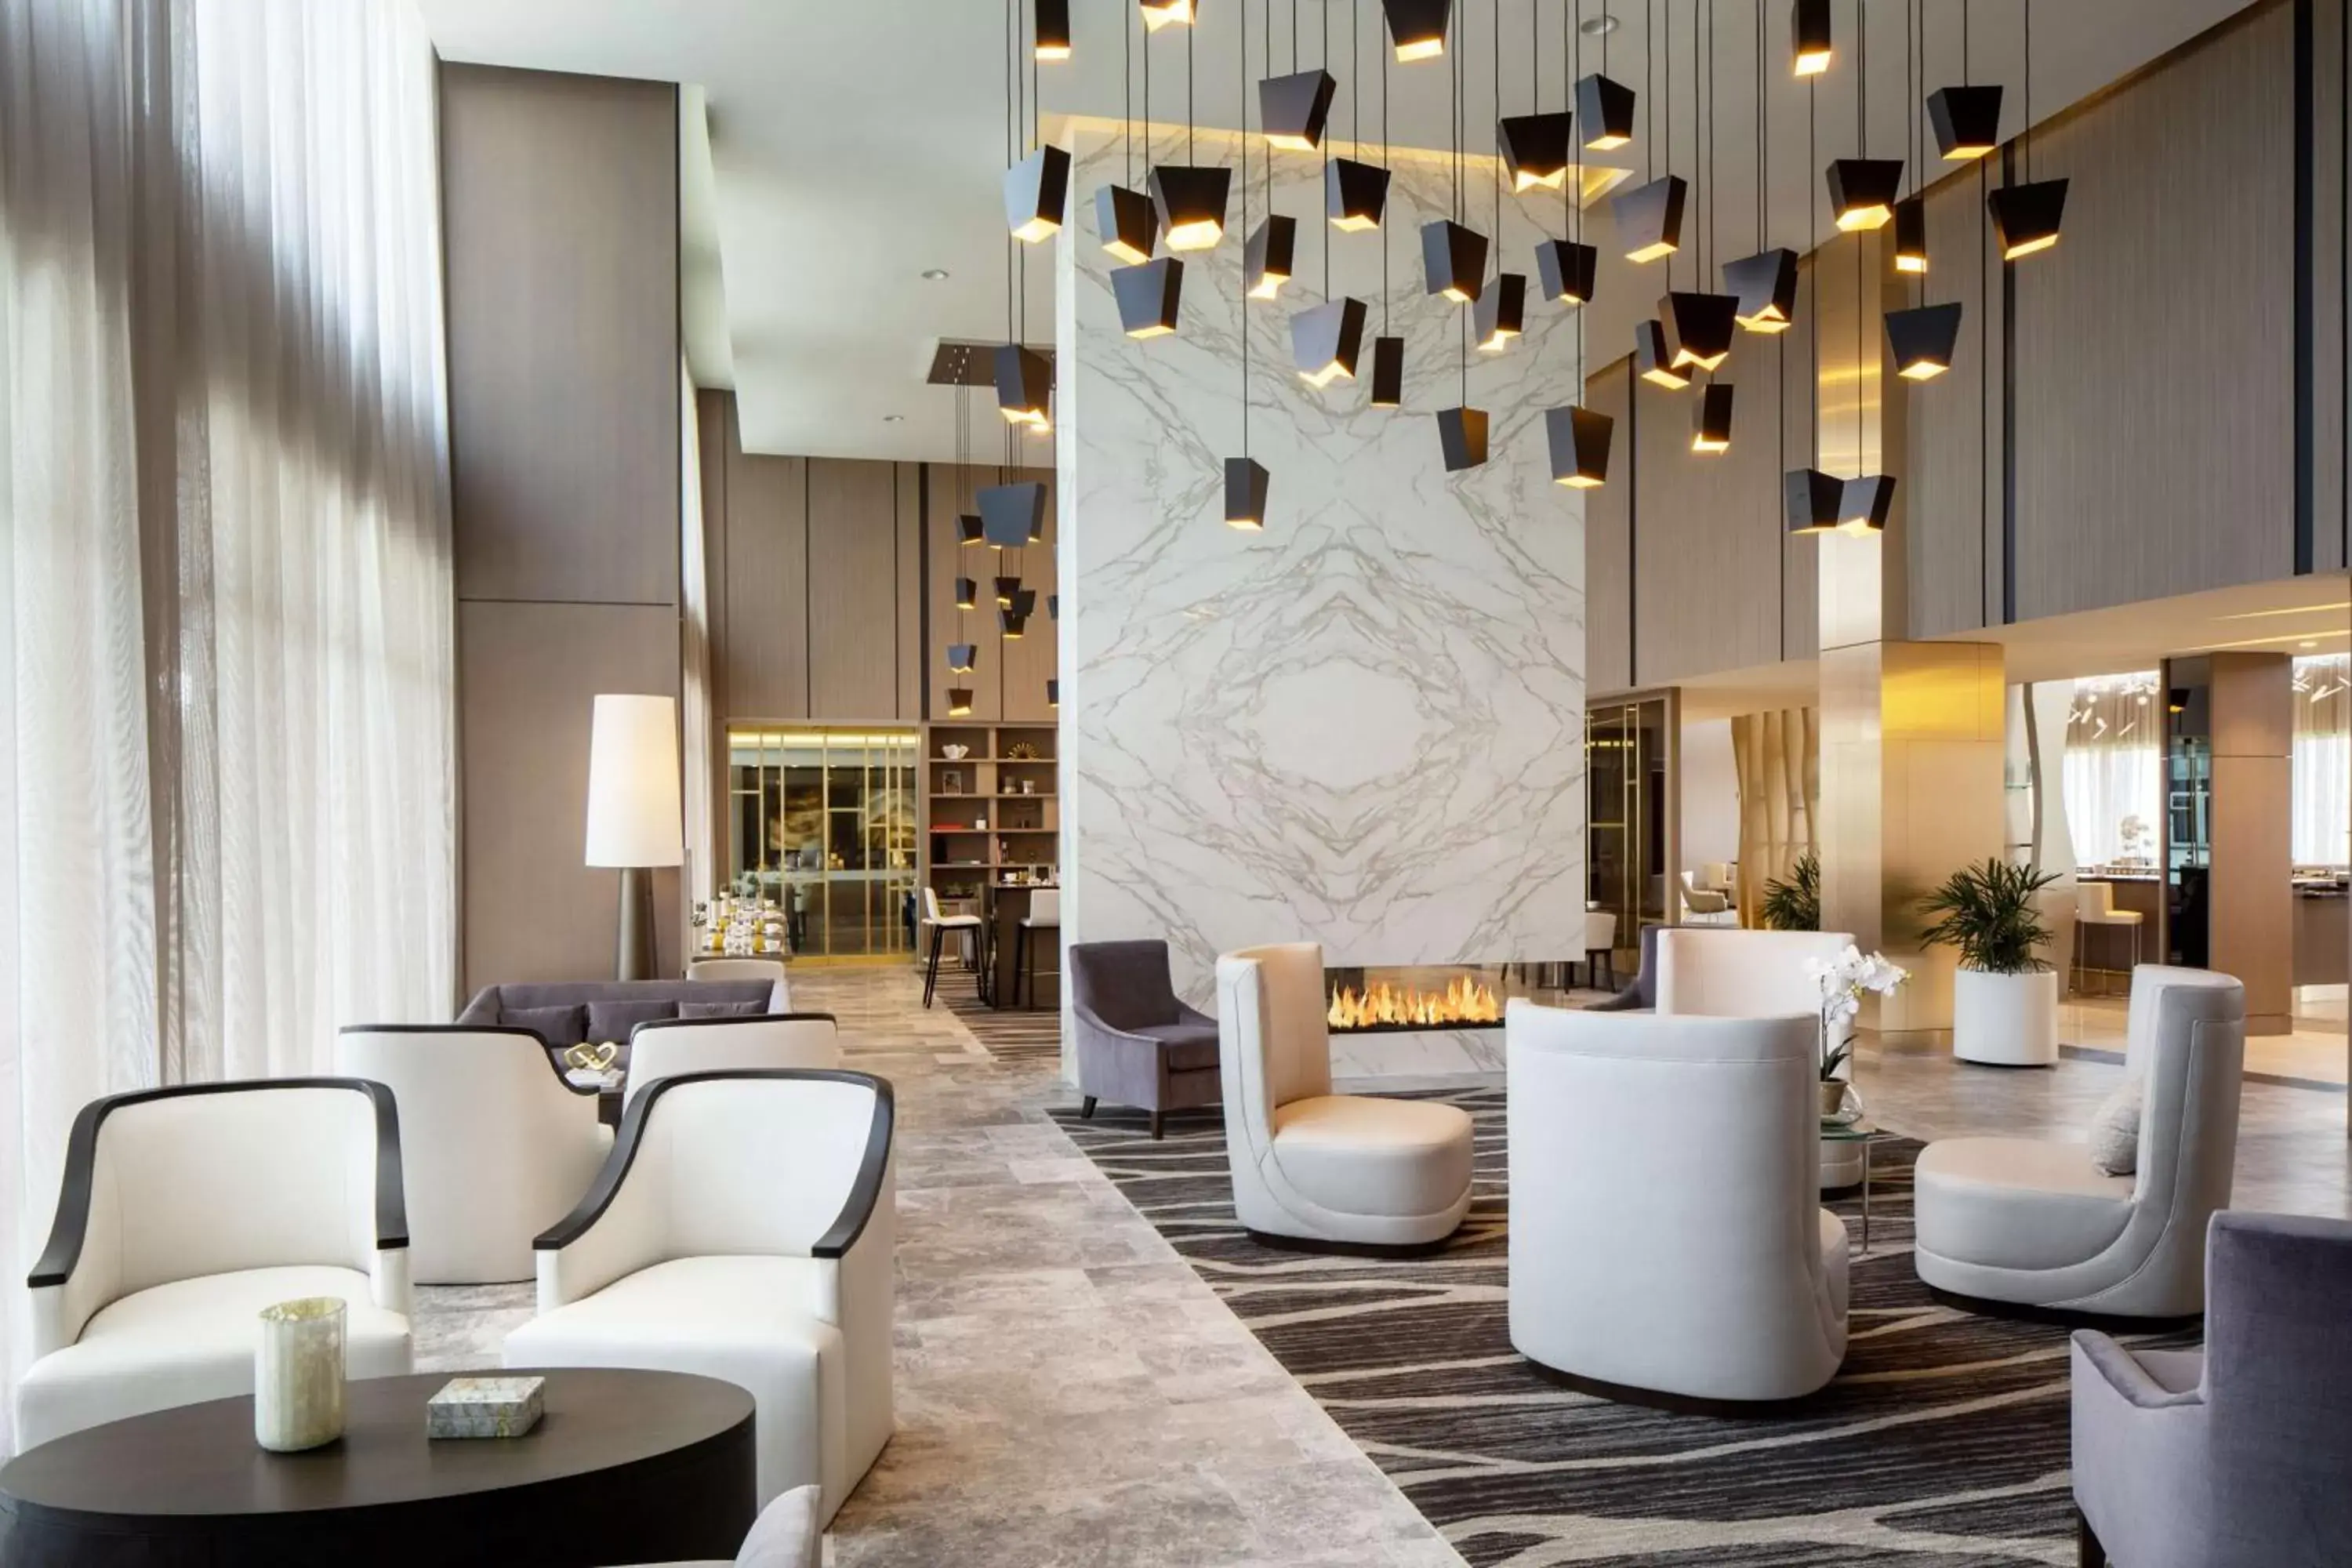 Lobby or reception in Hilton Aventura Miami